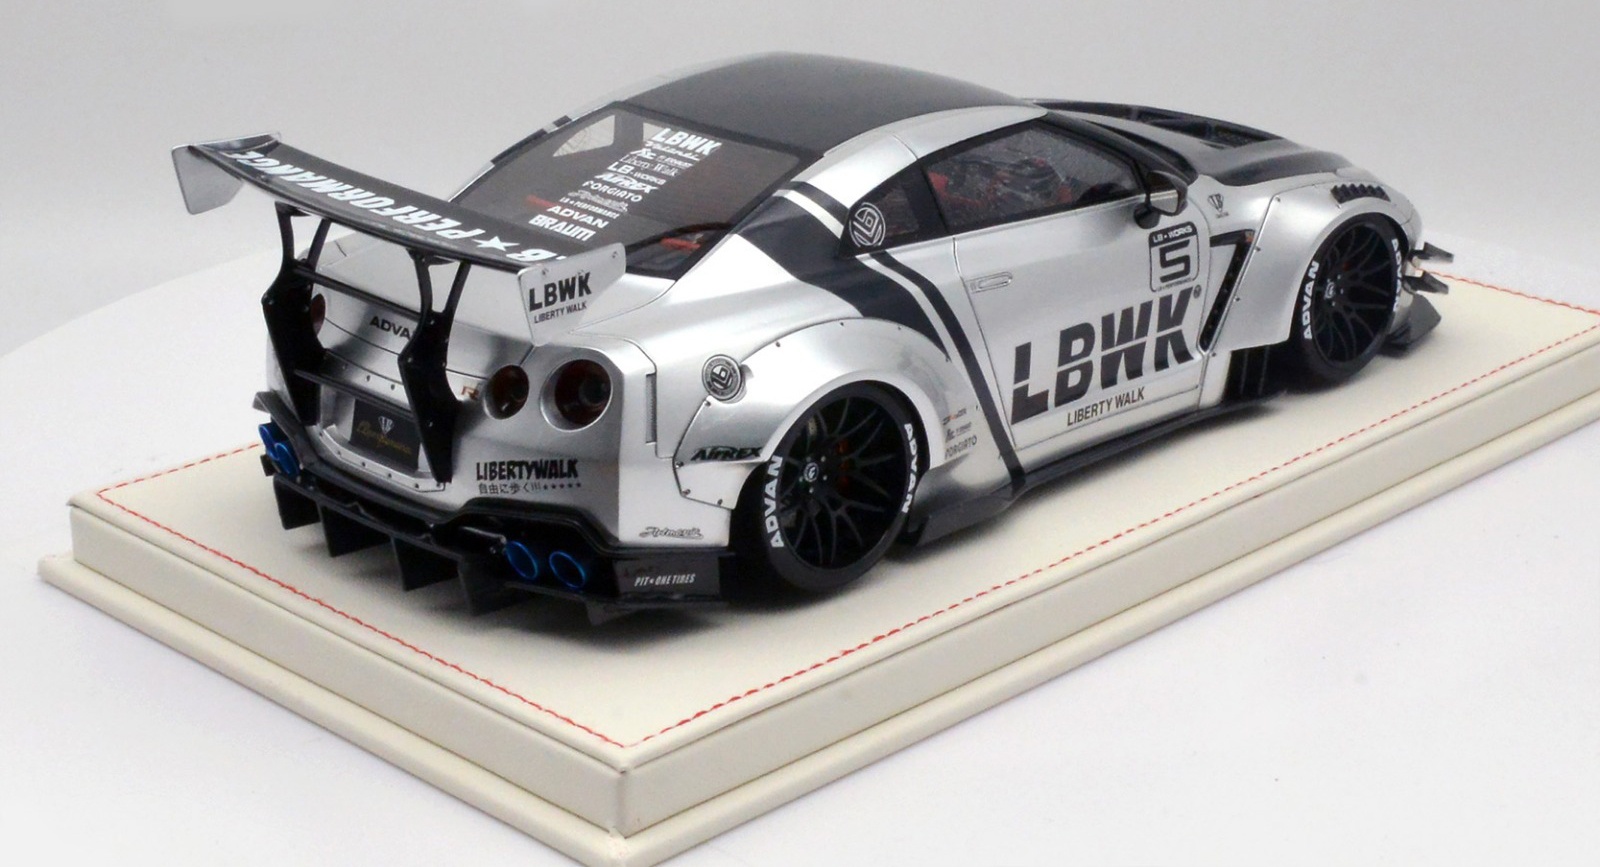 1/18 LB-Works Nissan GT-R R35 V2.0 LBWK Silver